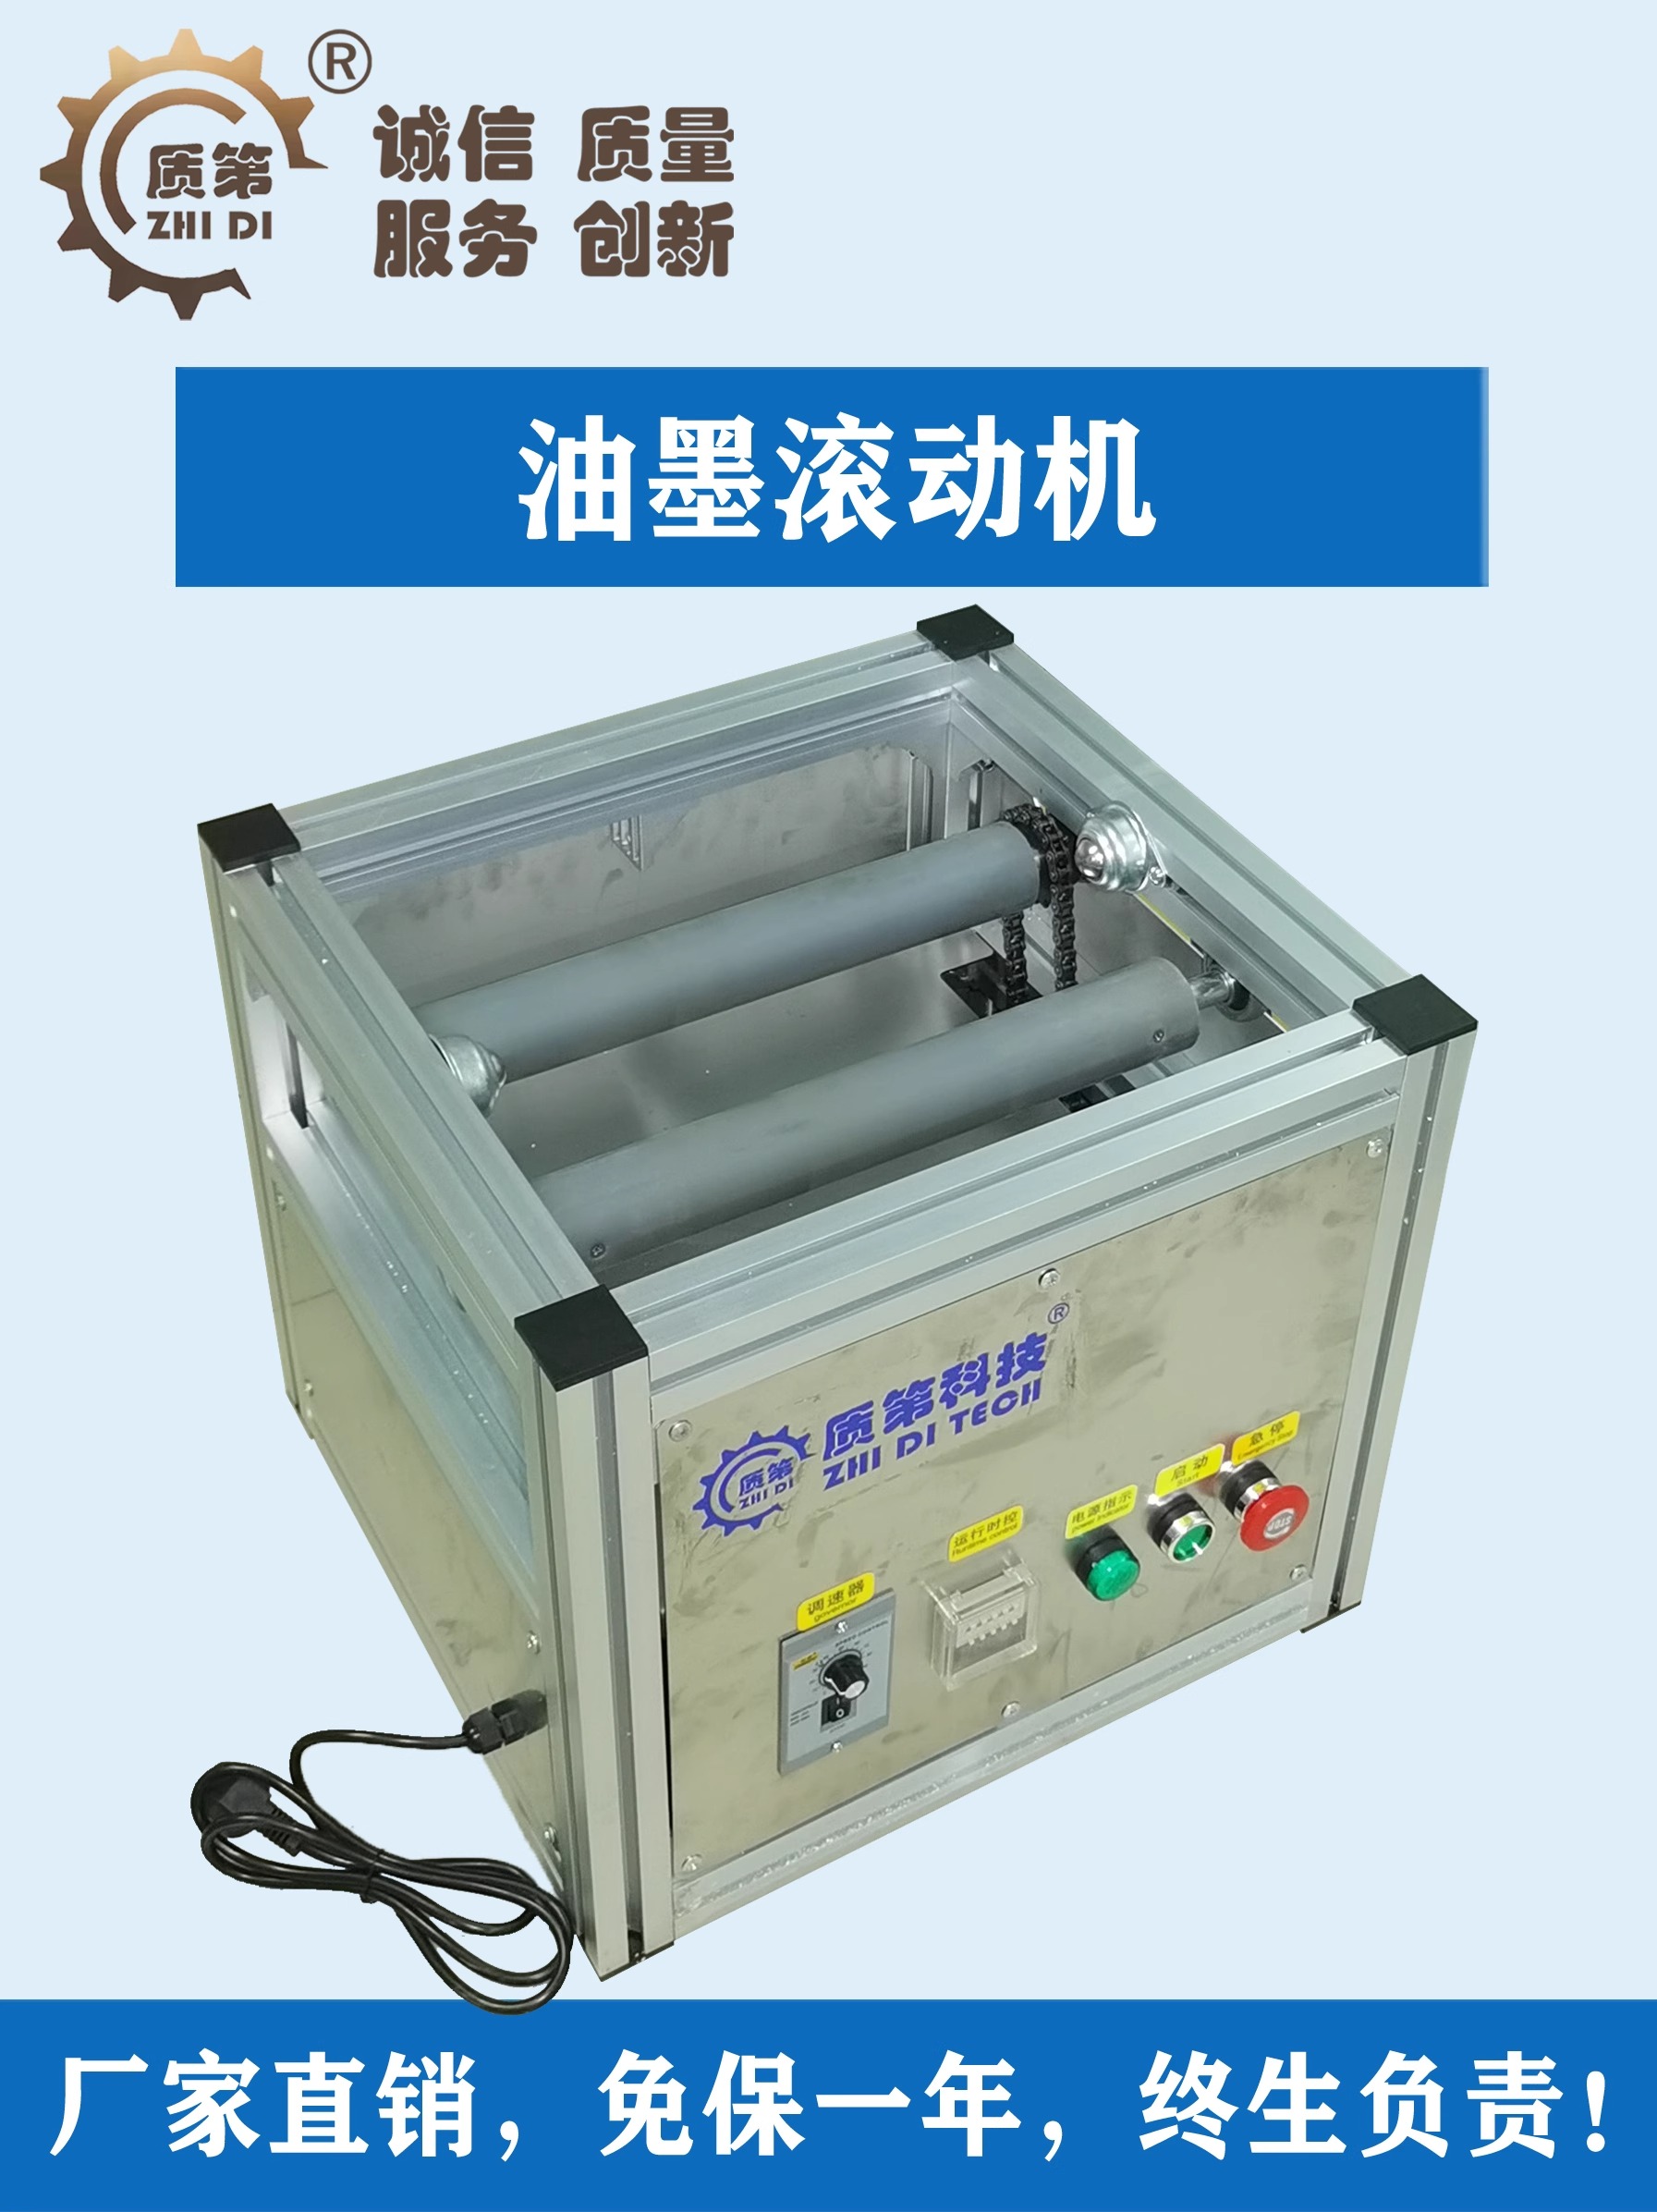 油墨滚动机 用于印刷胶印油墨和油漆防沉淀设备 带油桶连续翻转